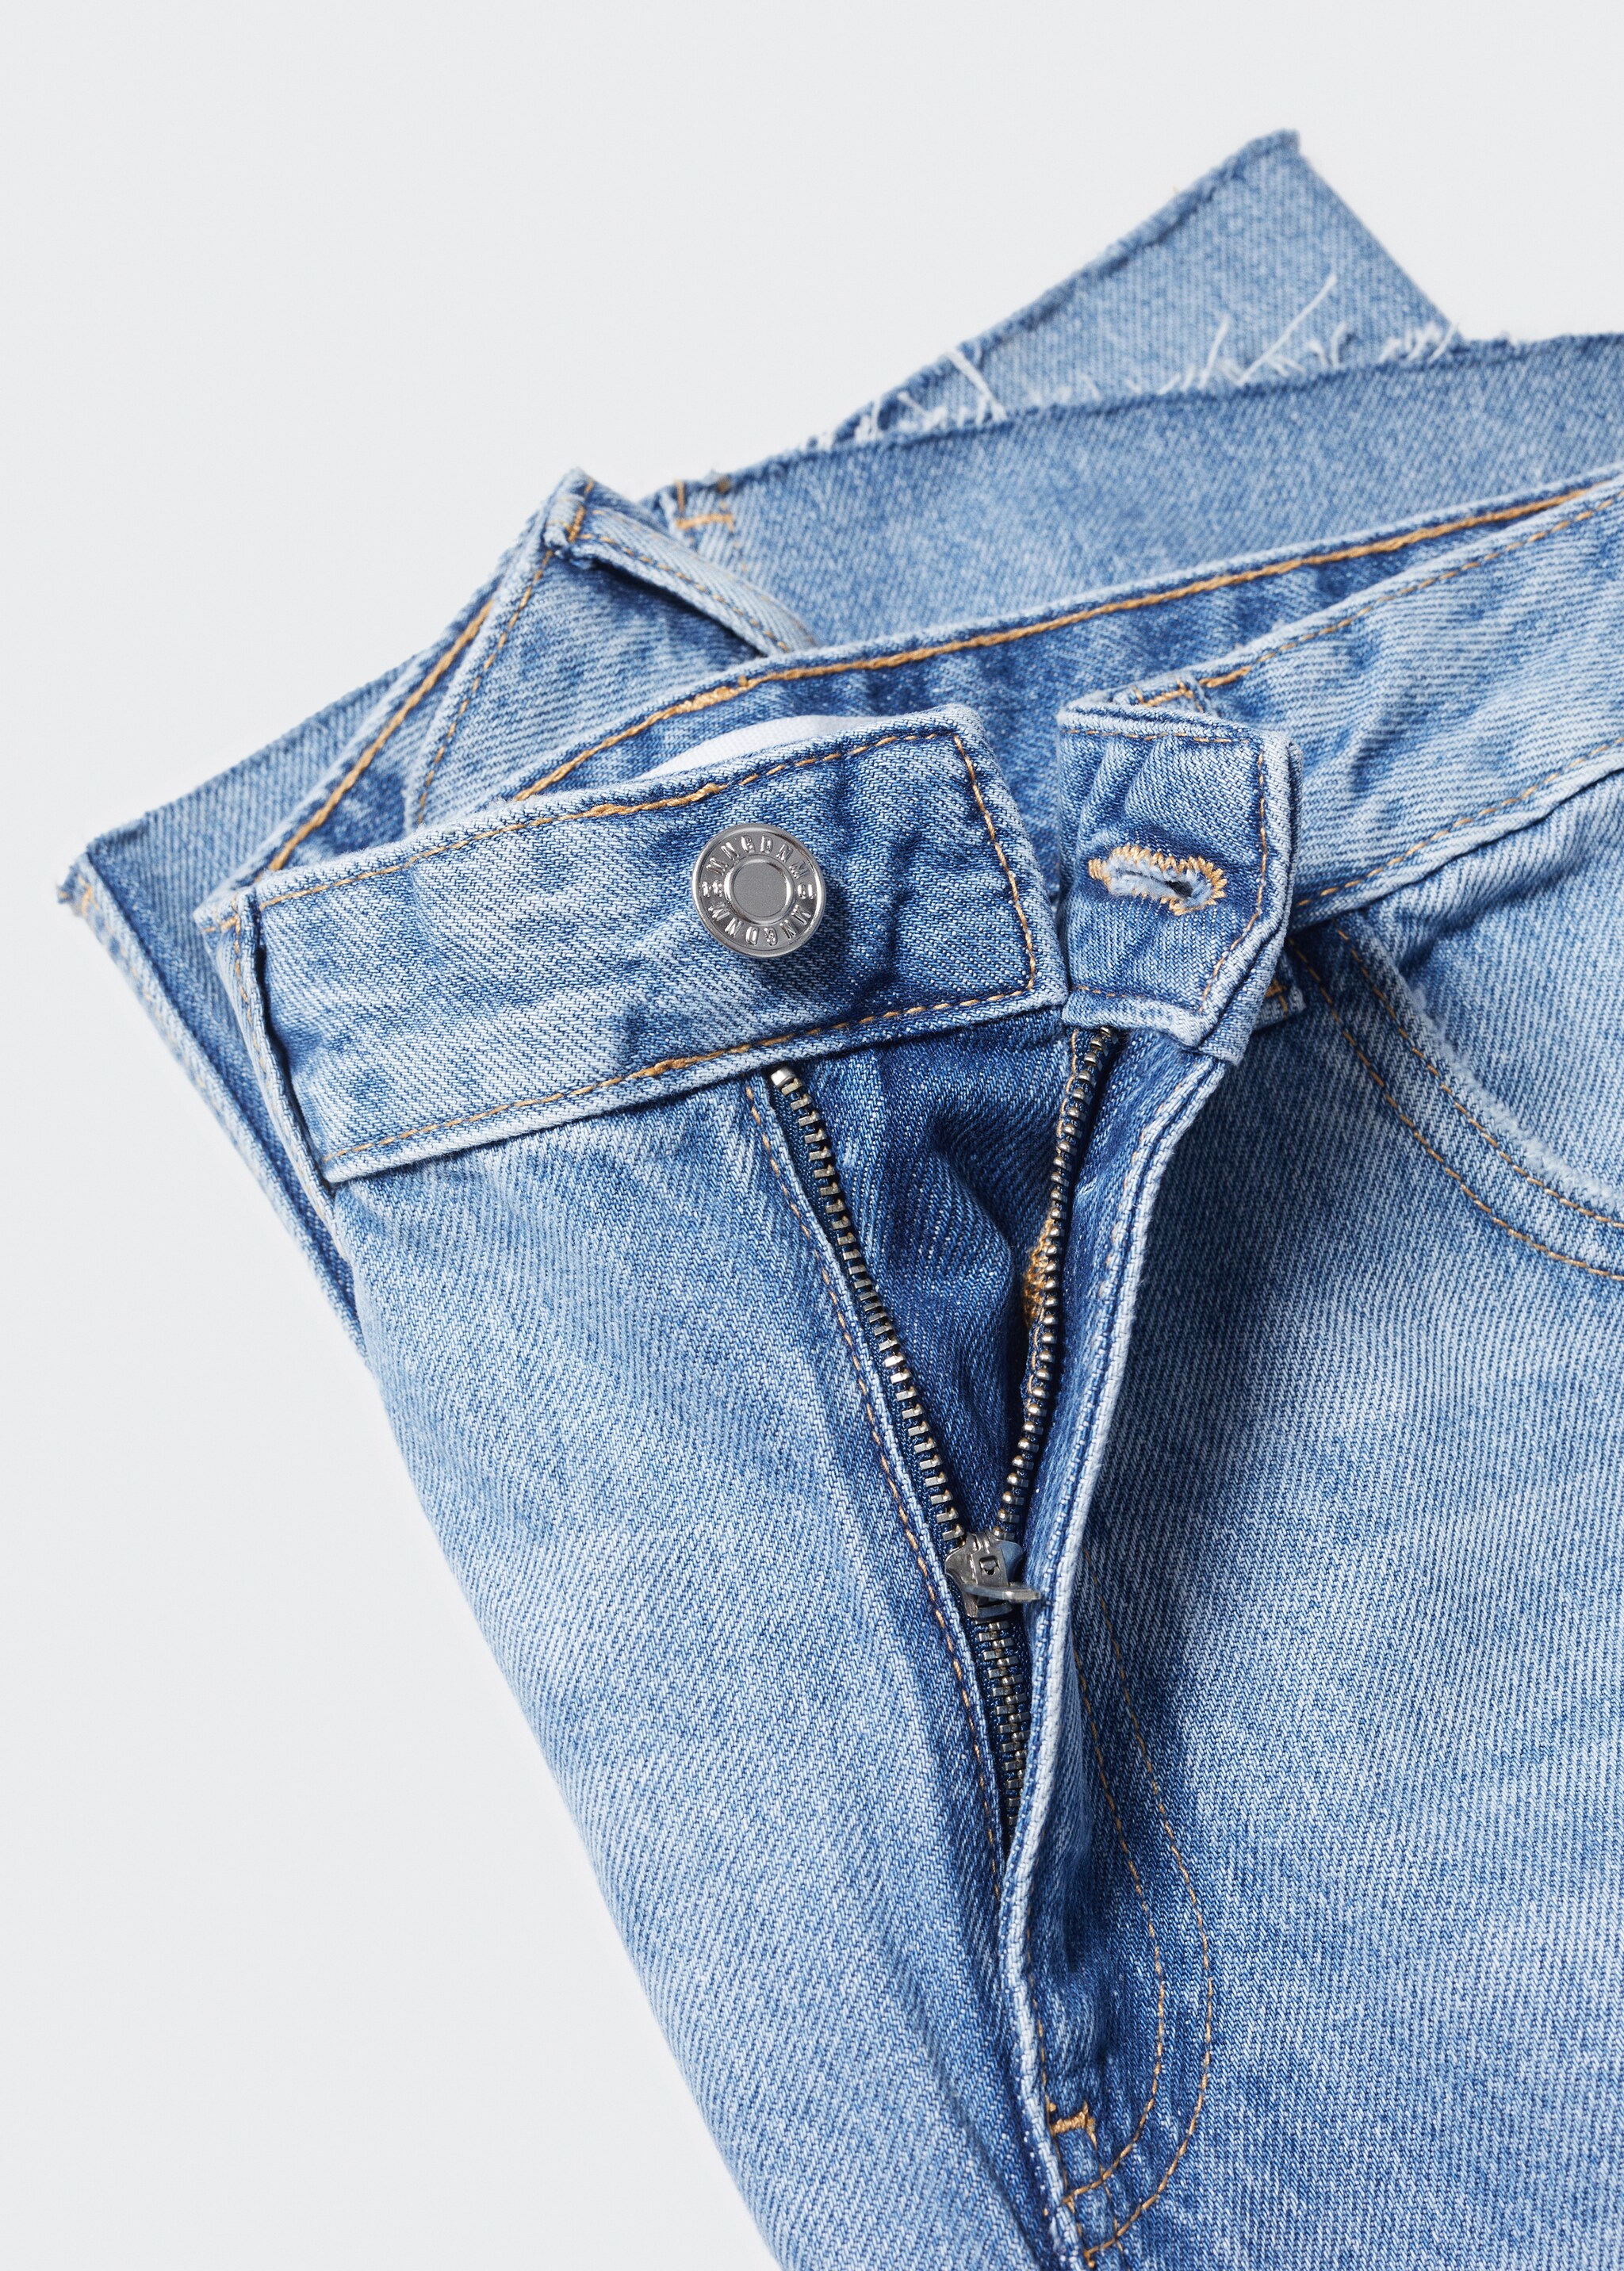 Jeans wideleg tiro medio - Detalle del artículo 8